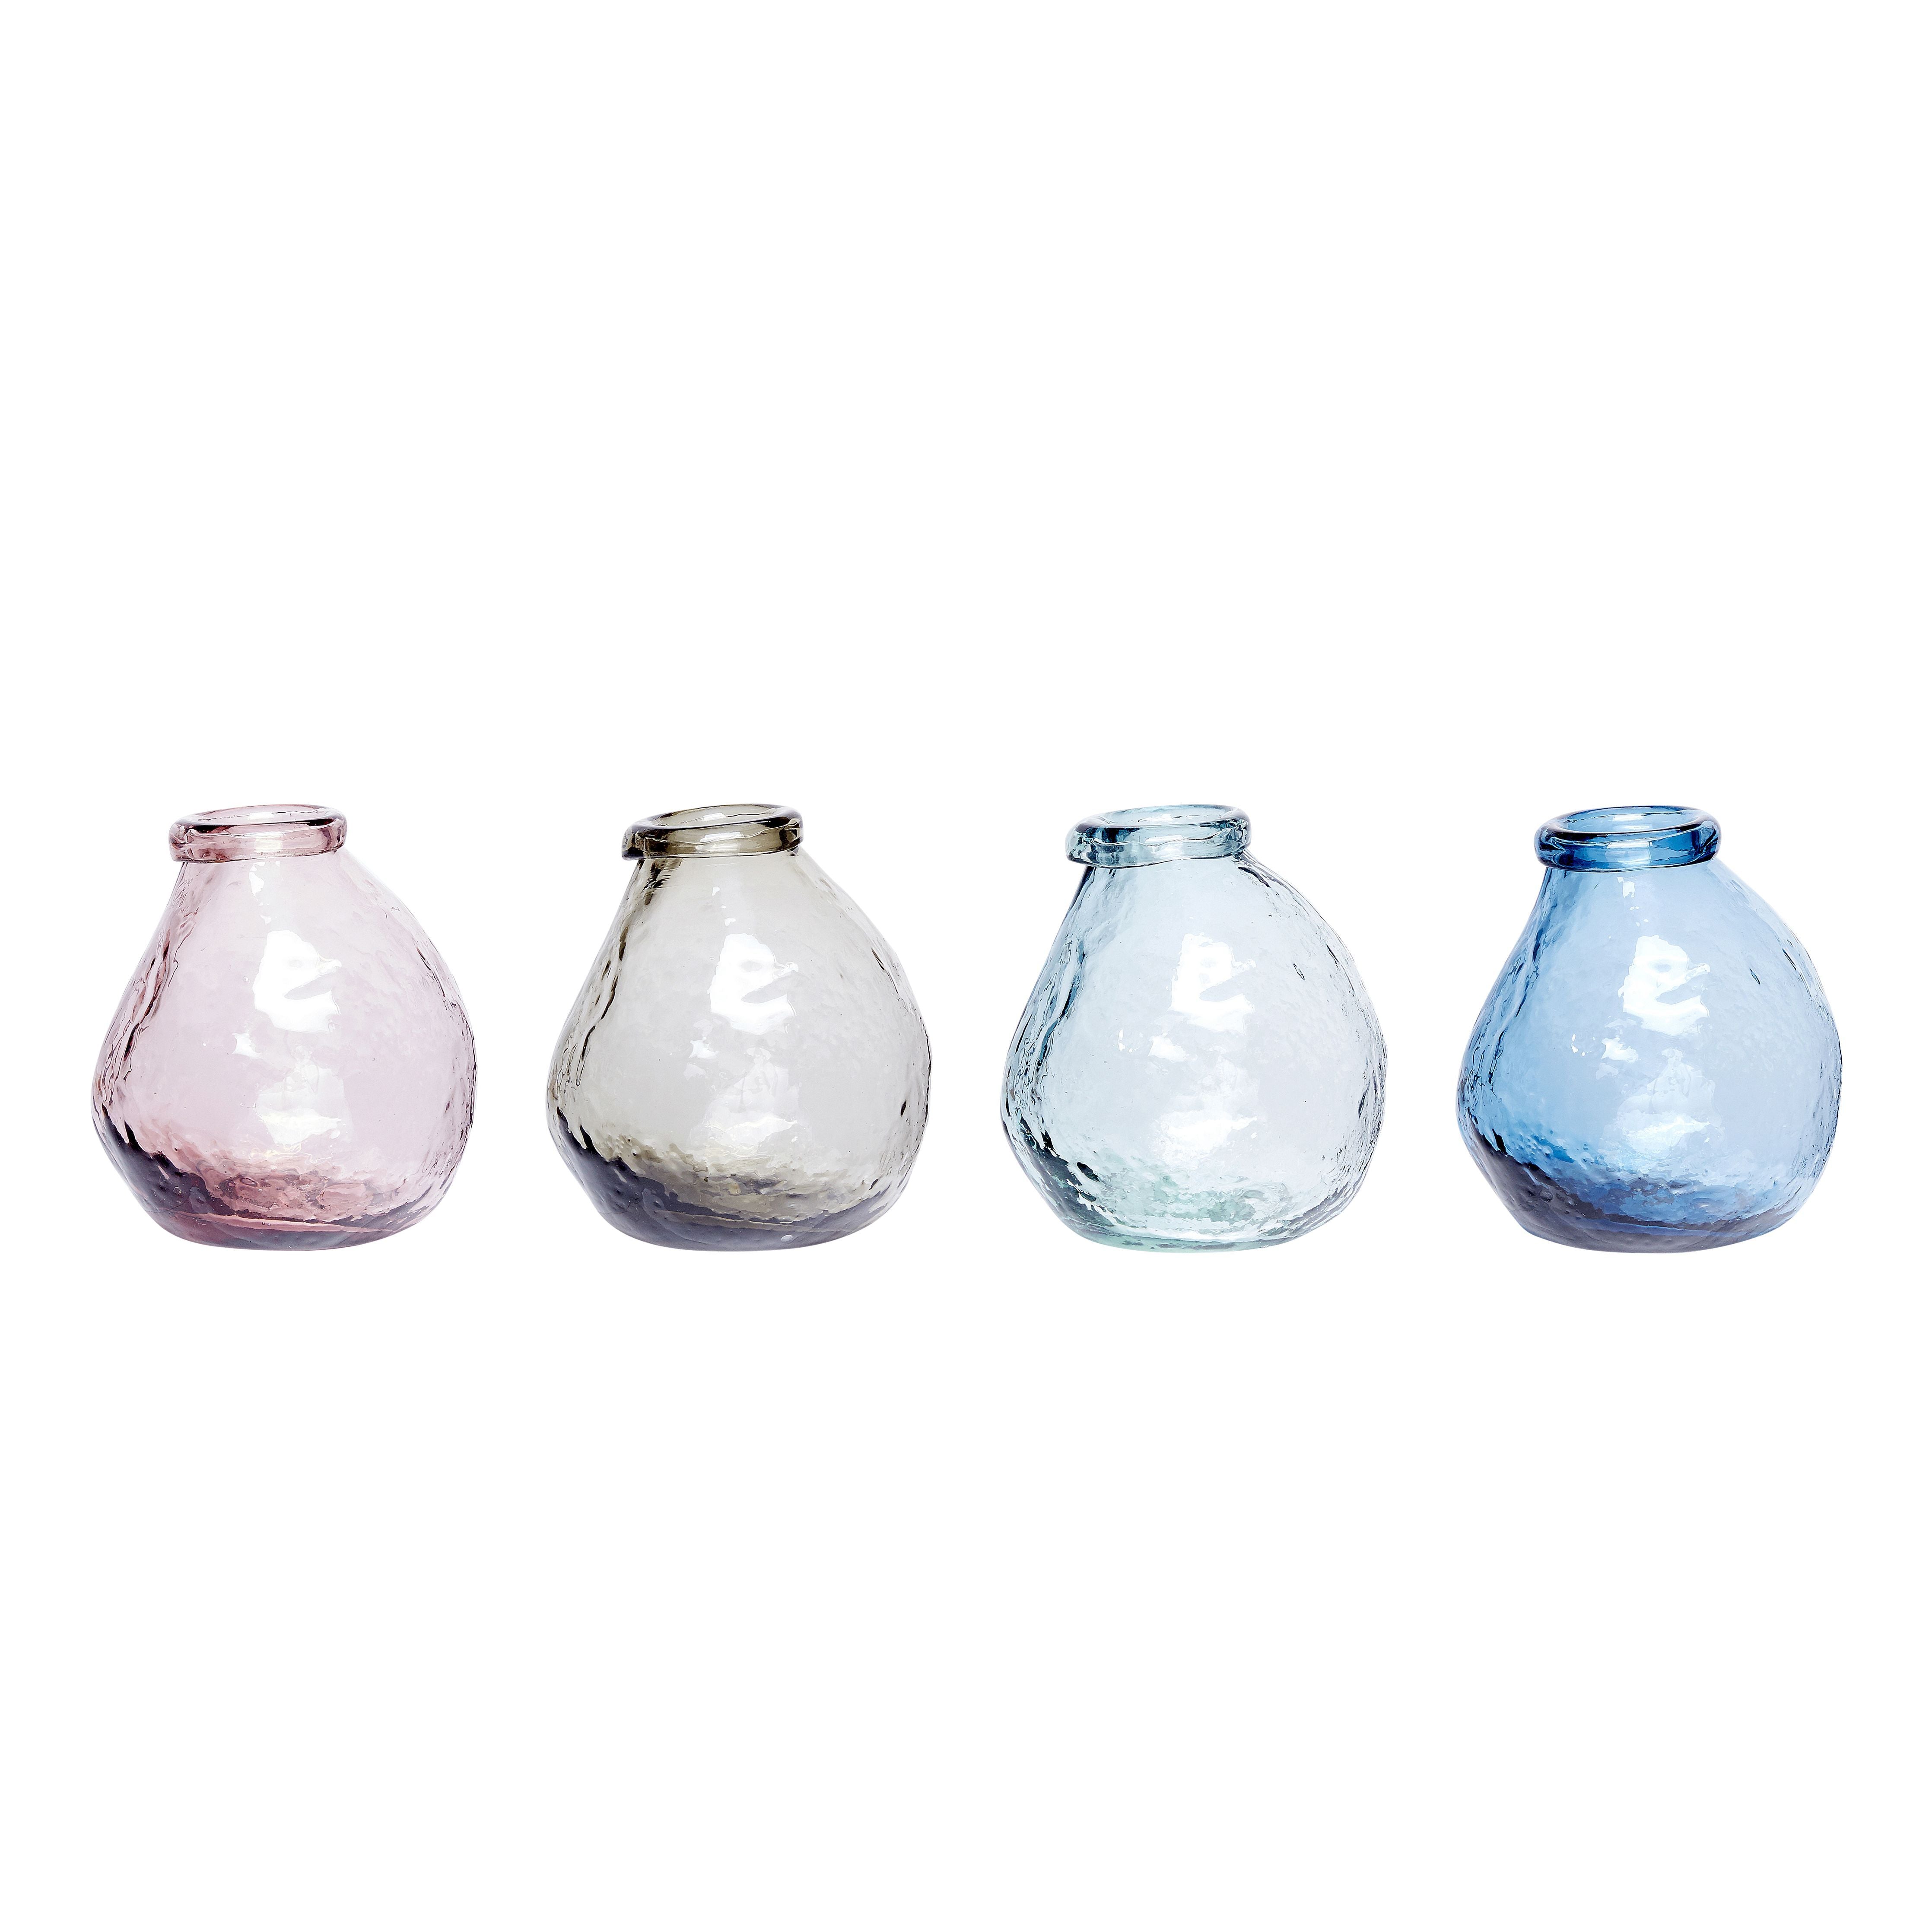 Hübsch Vase Glass Pink/Klar/Blau/Grau Set von 4, Øx H 10x12 cm